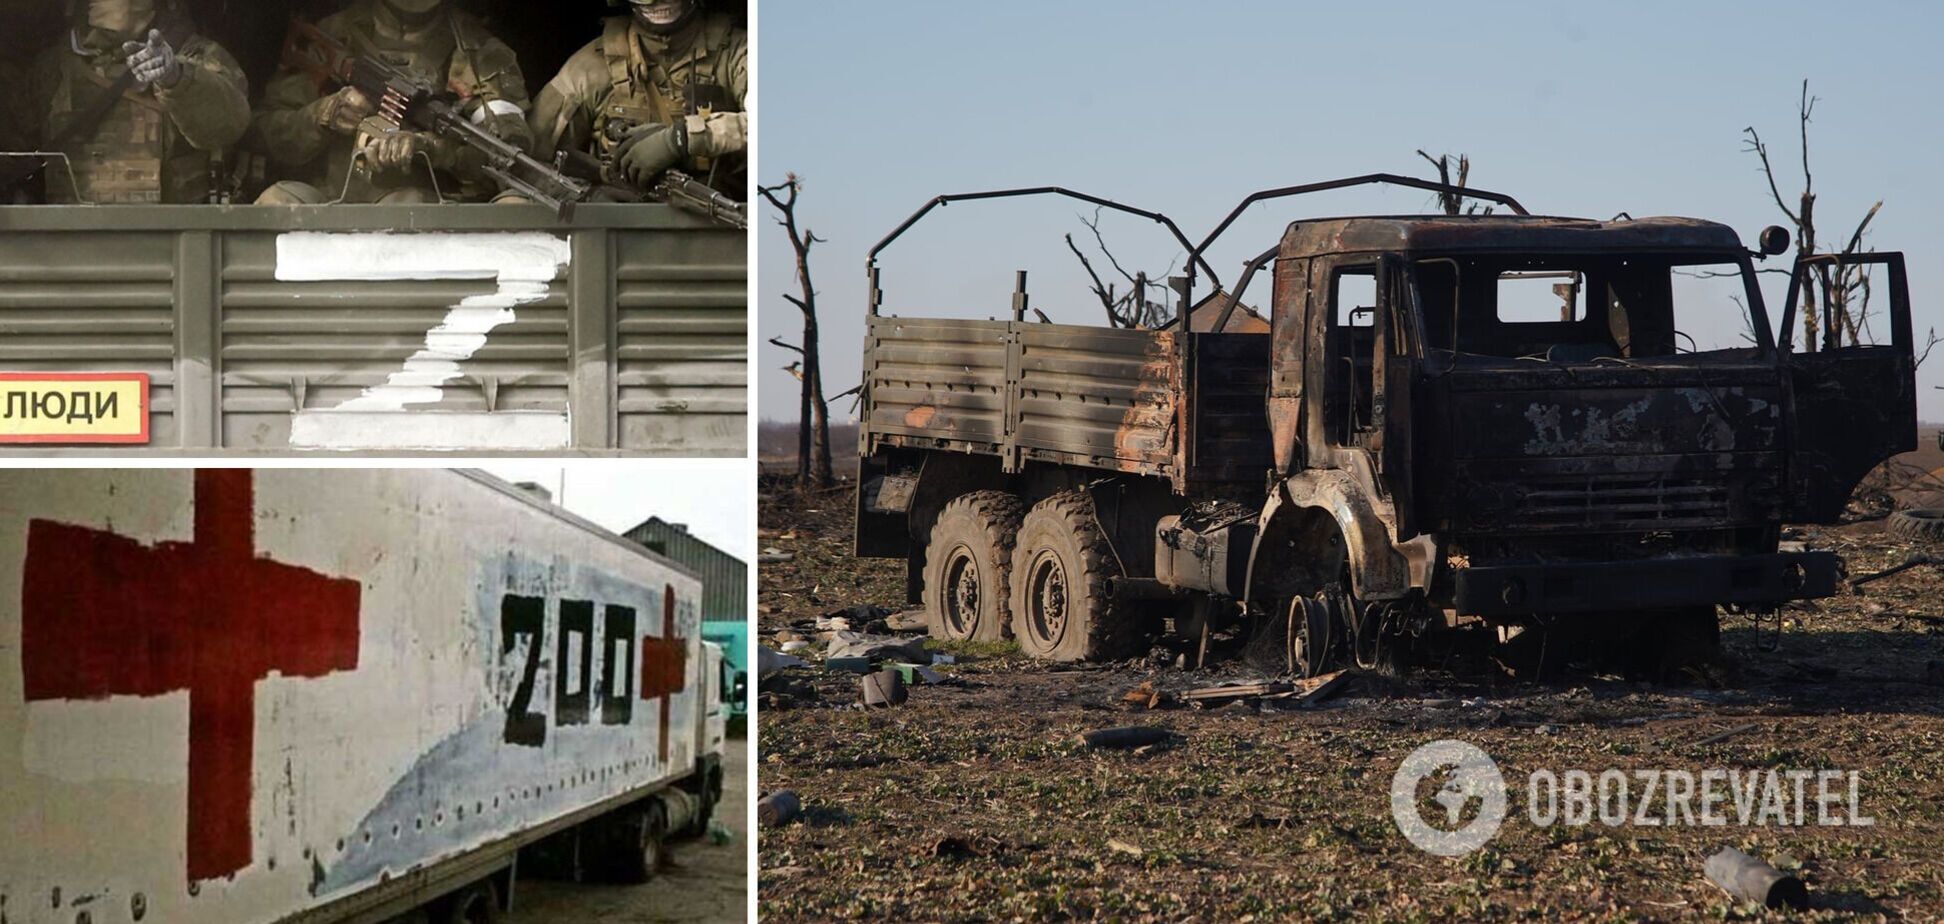 РосСМИ изменили формулировку о гибели оккупантов в Украине: не говорят о 'демилитаризации' и 'денацификации'